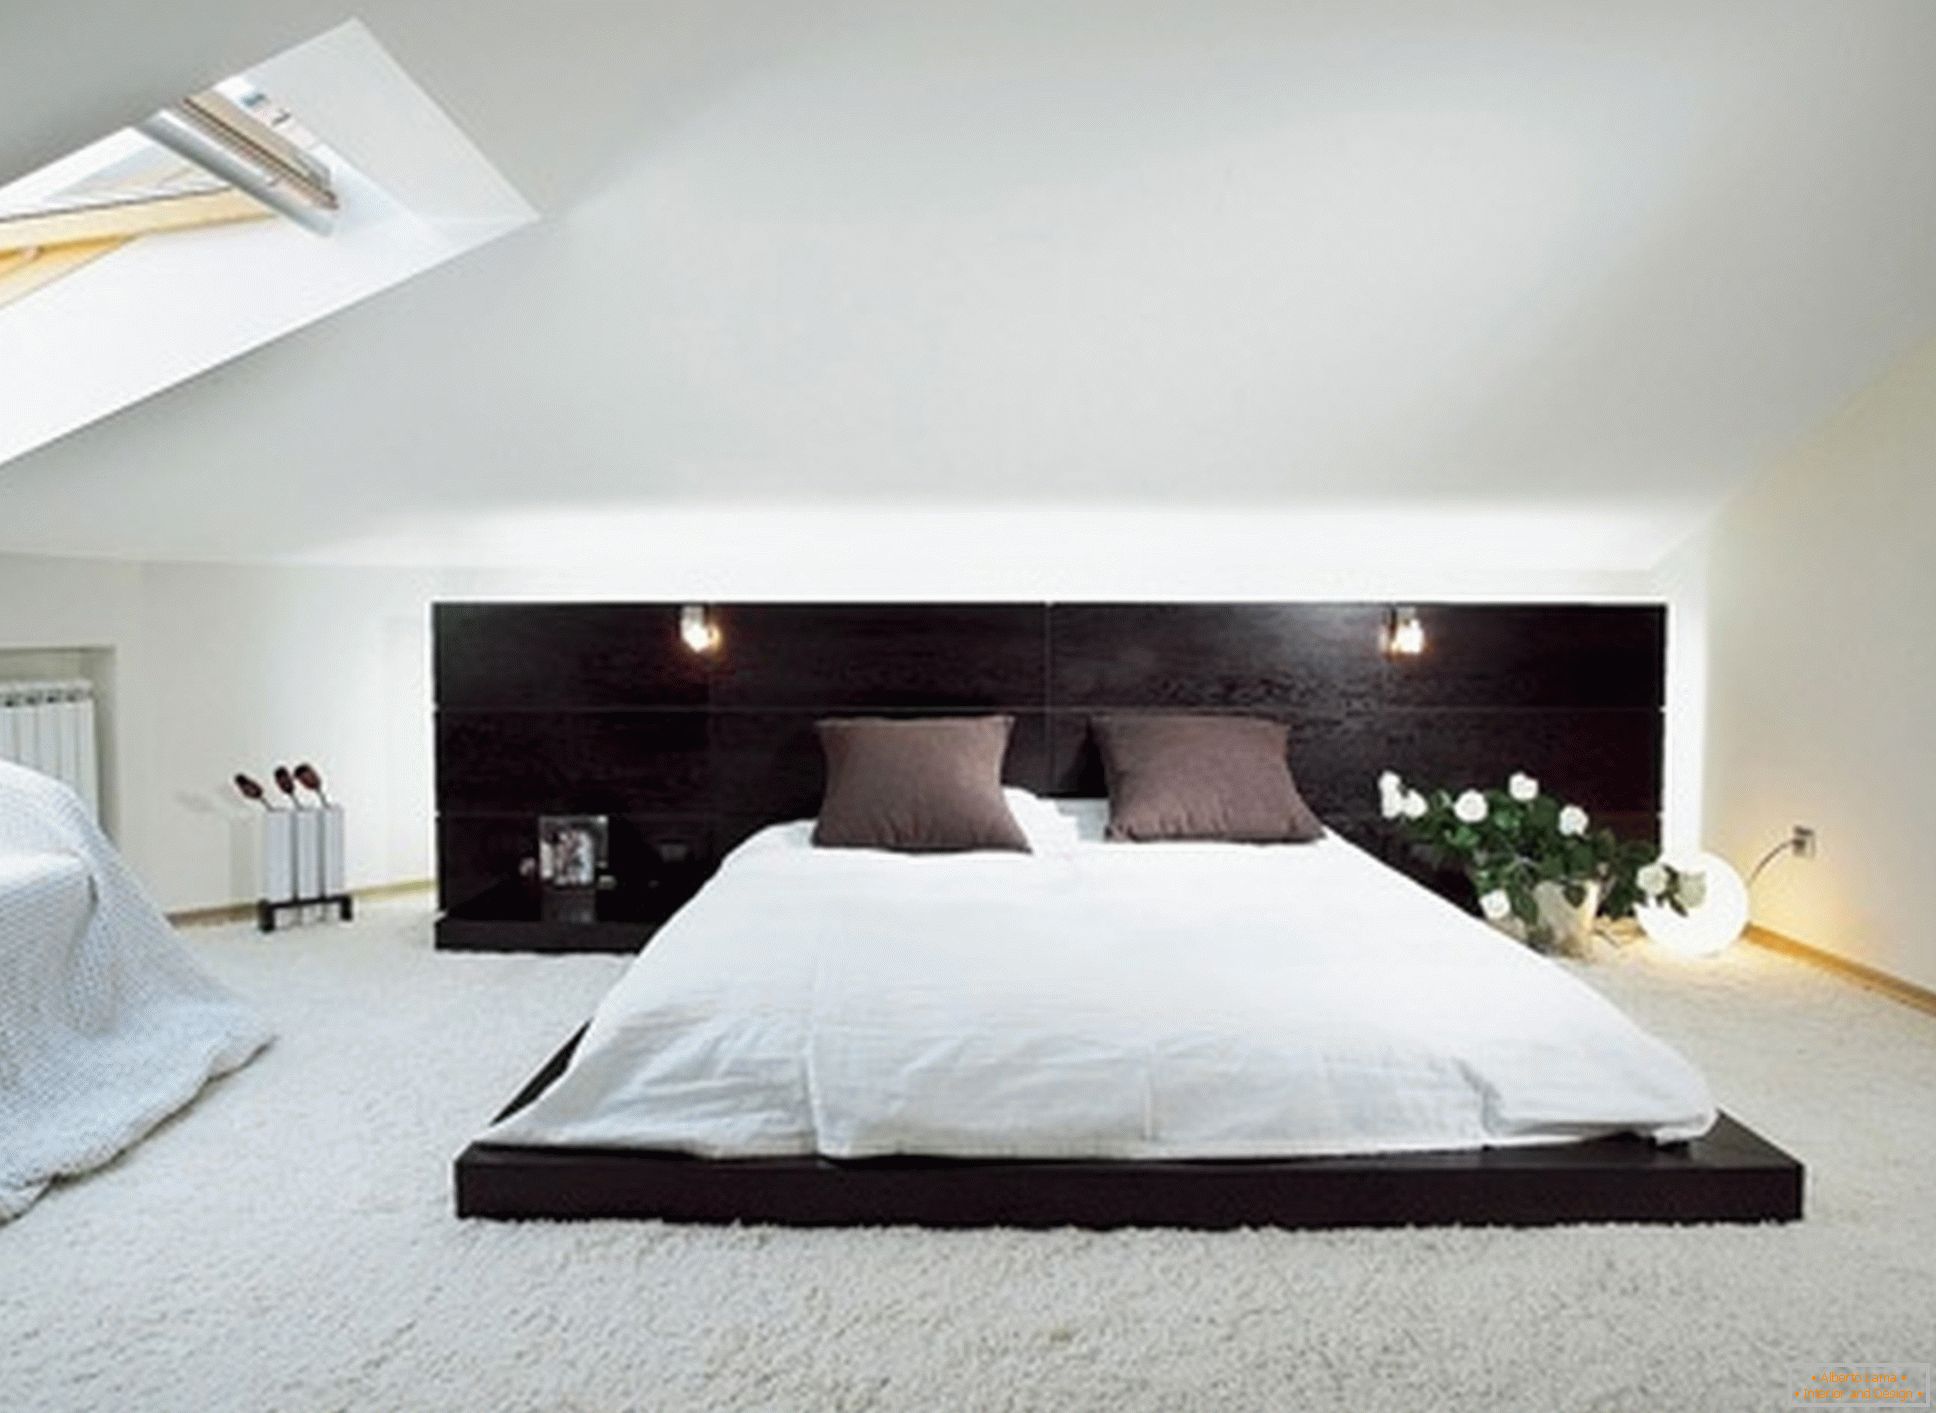 Luksuzna spavaća soba u stilu minimalizma - primjer uspješnog dizajna male sobe na potkrovlju.